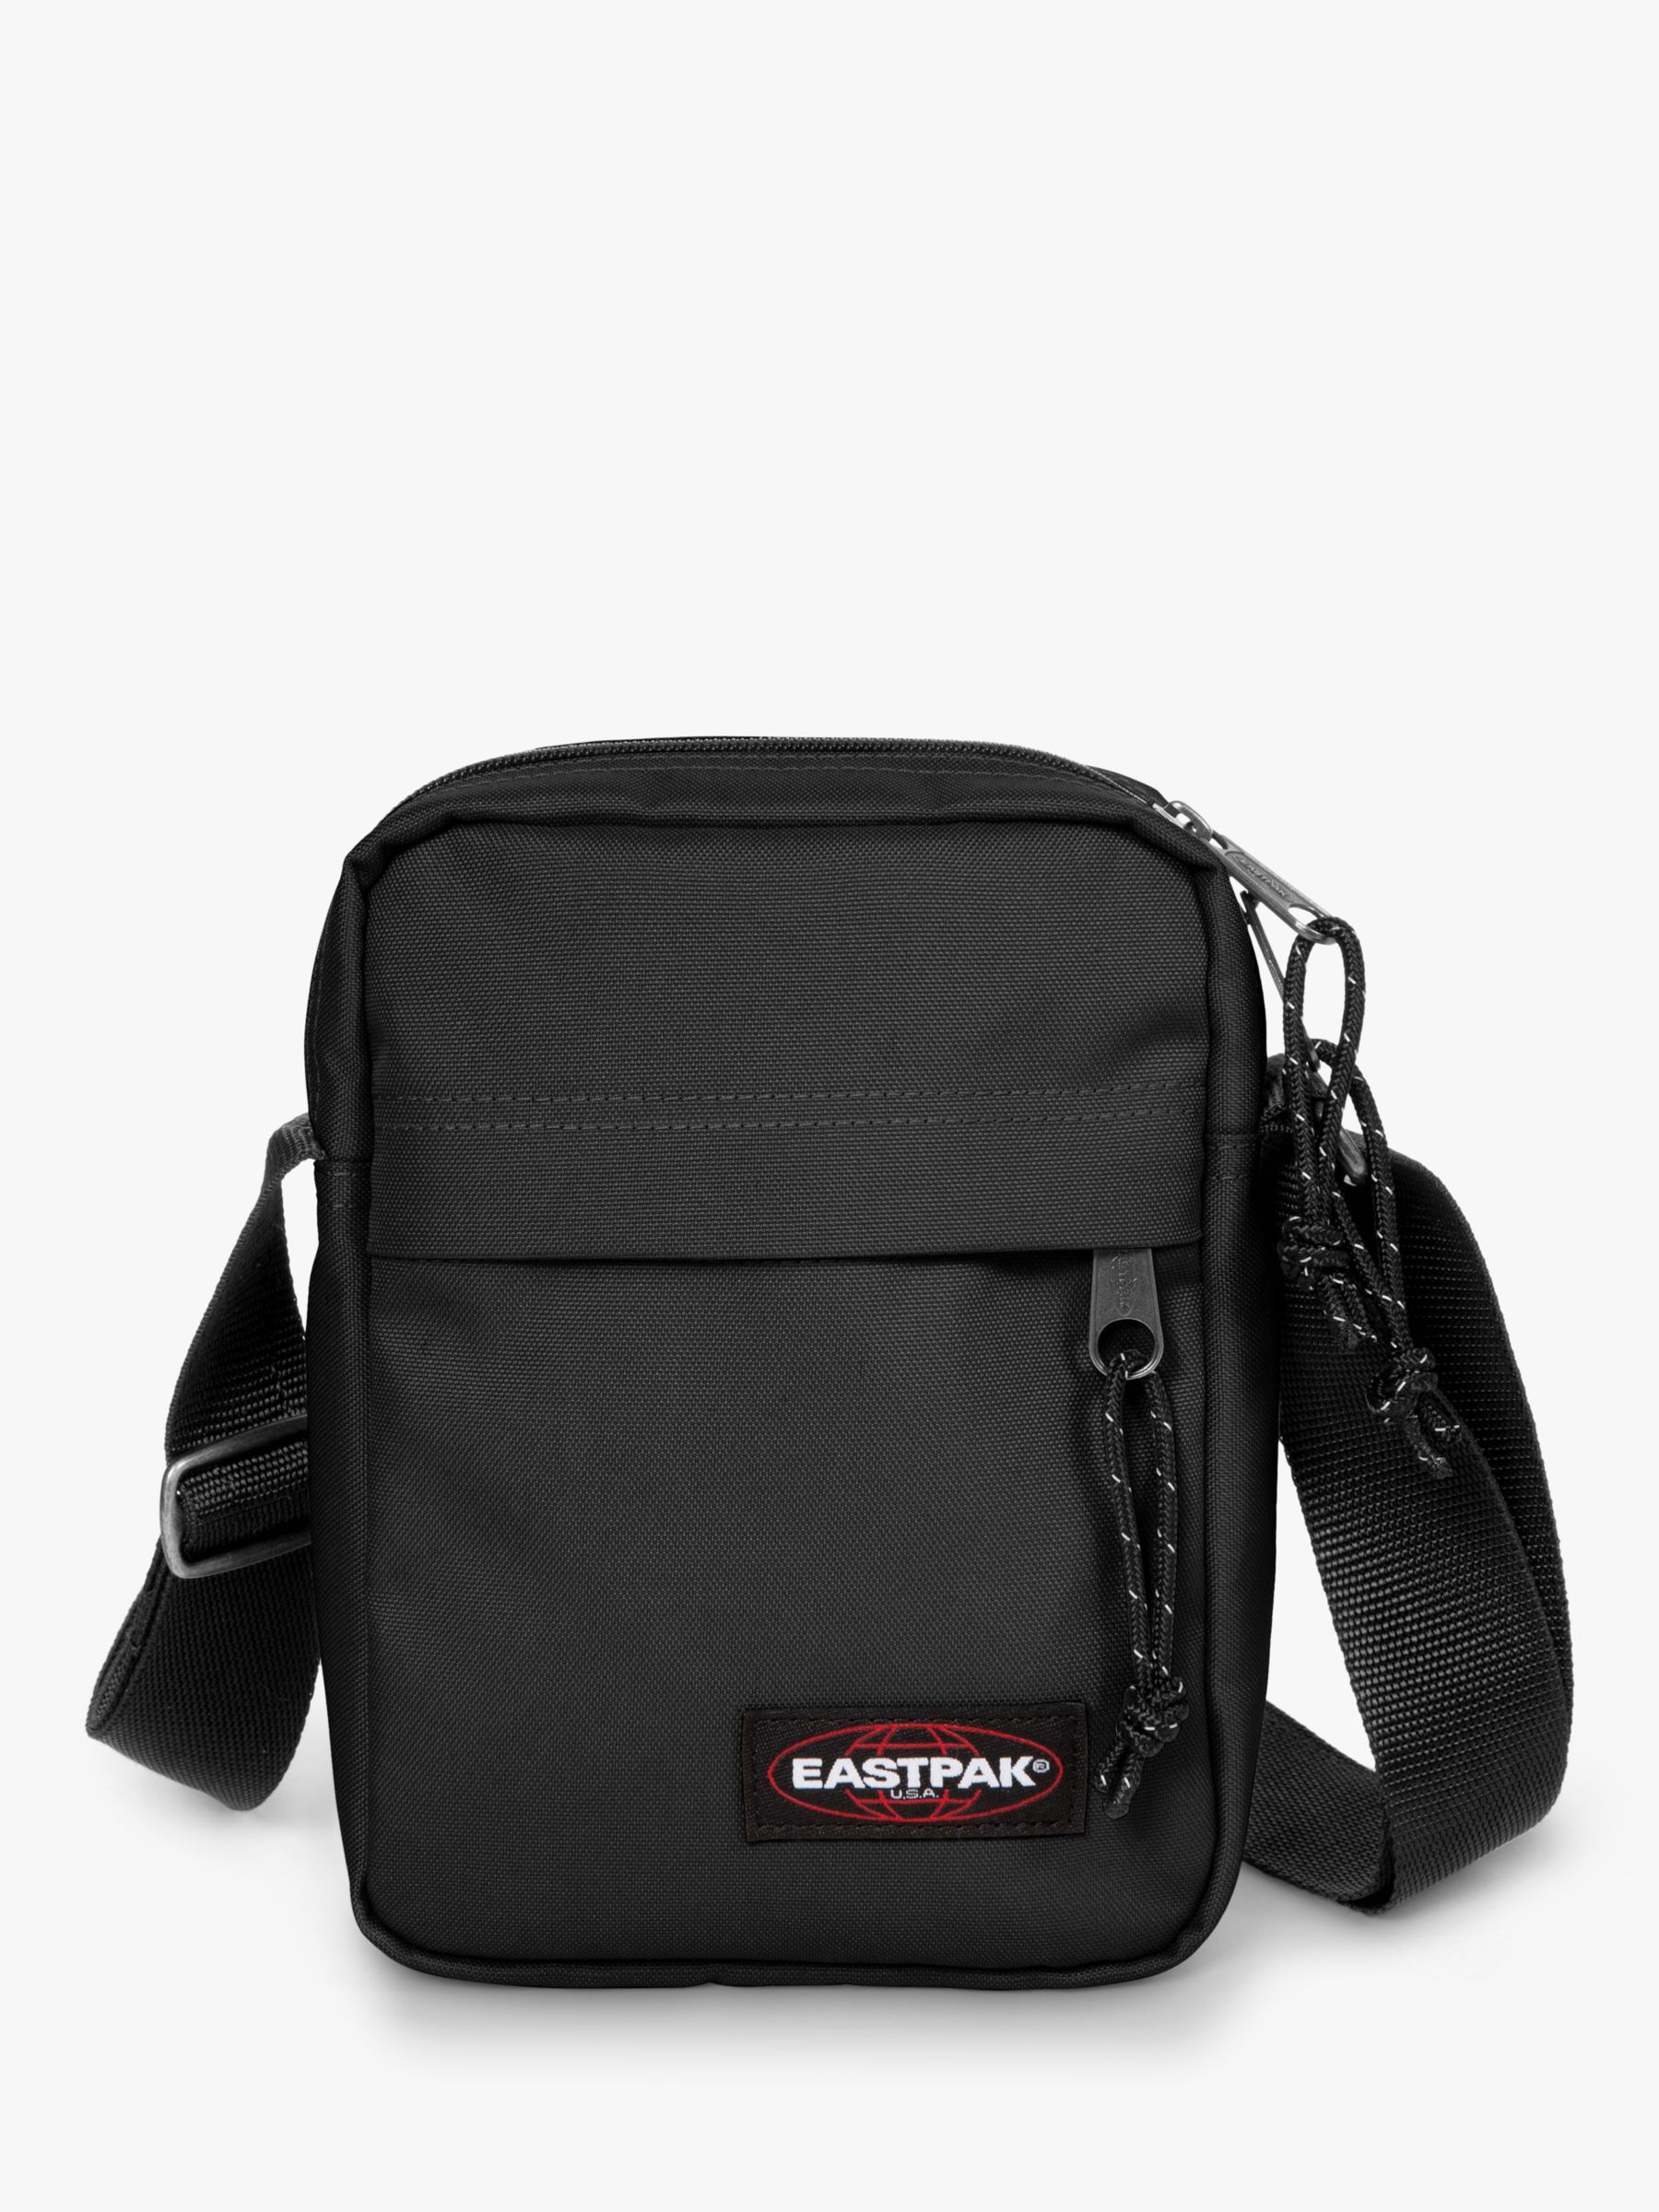 Eastpak The One Flight Bag, Black